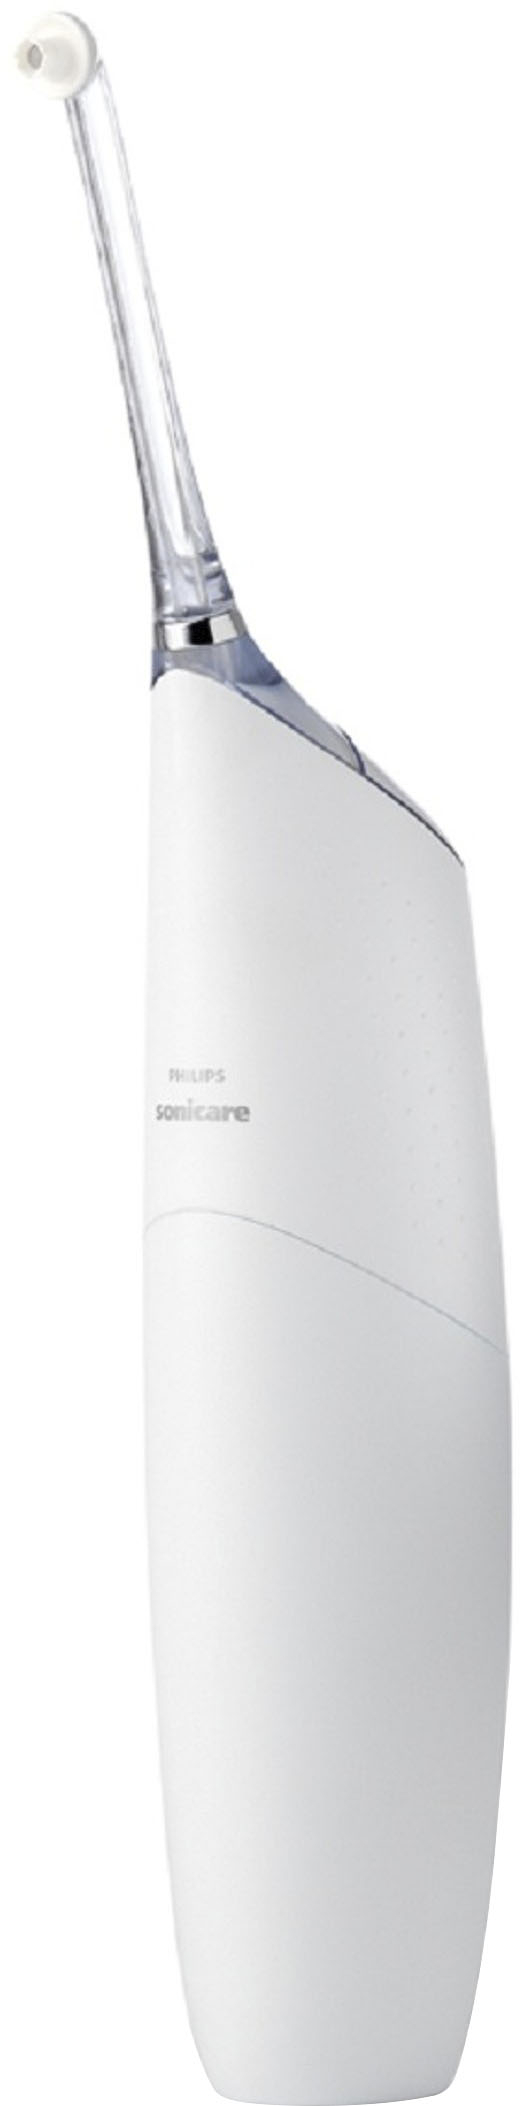 tofu Bruise telescope Best Buy: Philips Sonicare AirFloss Pro Interdental Cleaner White HX8331/01